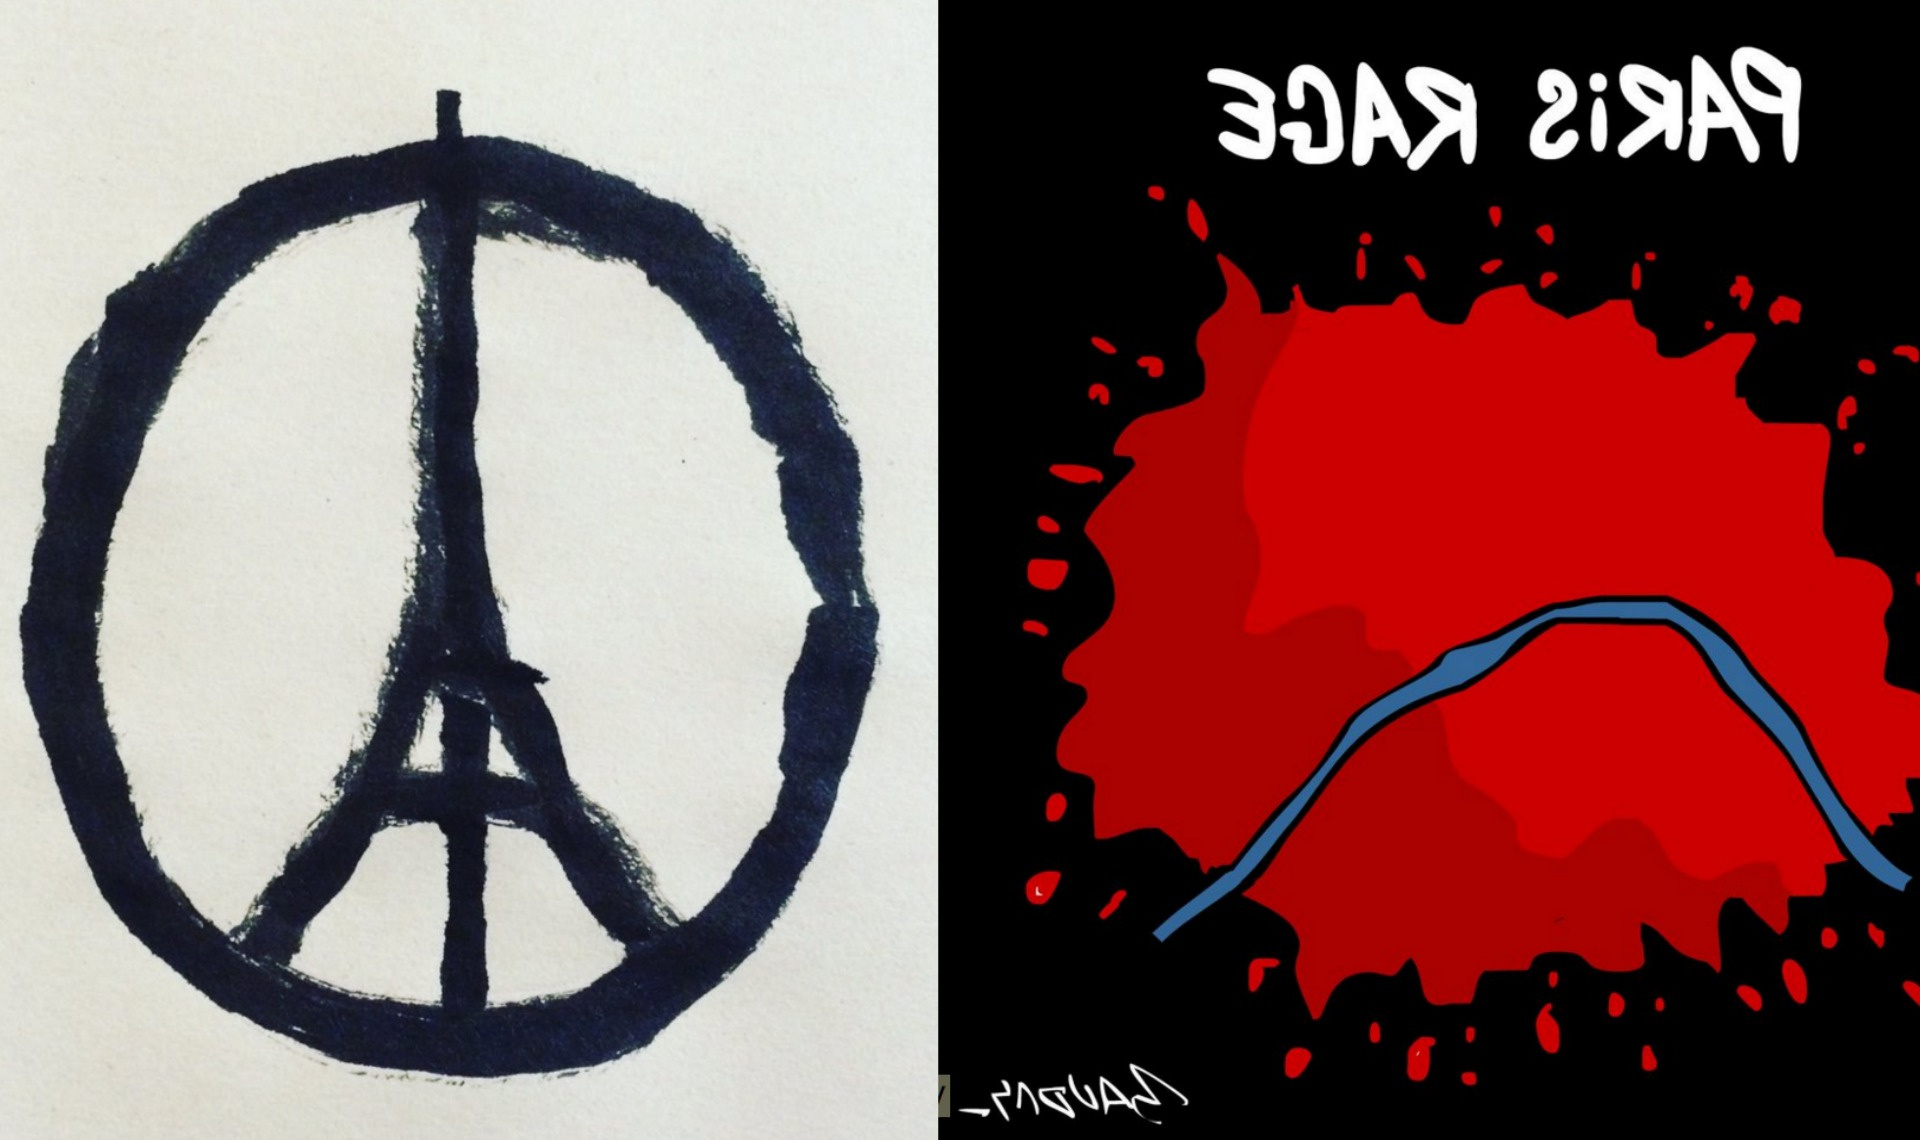 dessins messages hommage attentat 13 novembre bordel